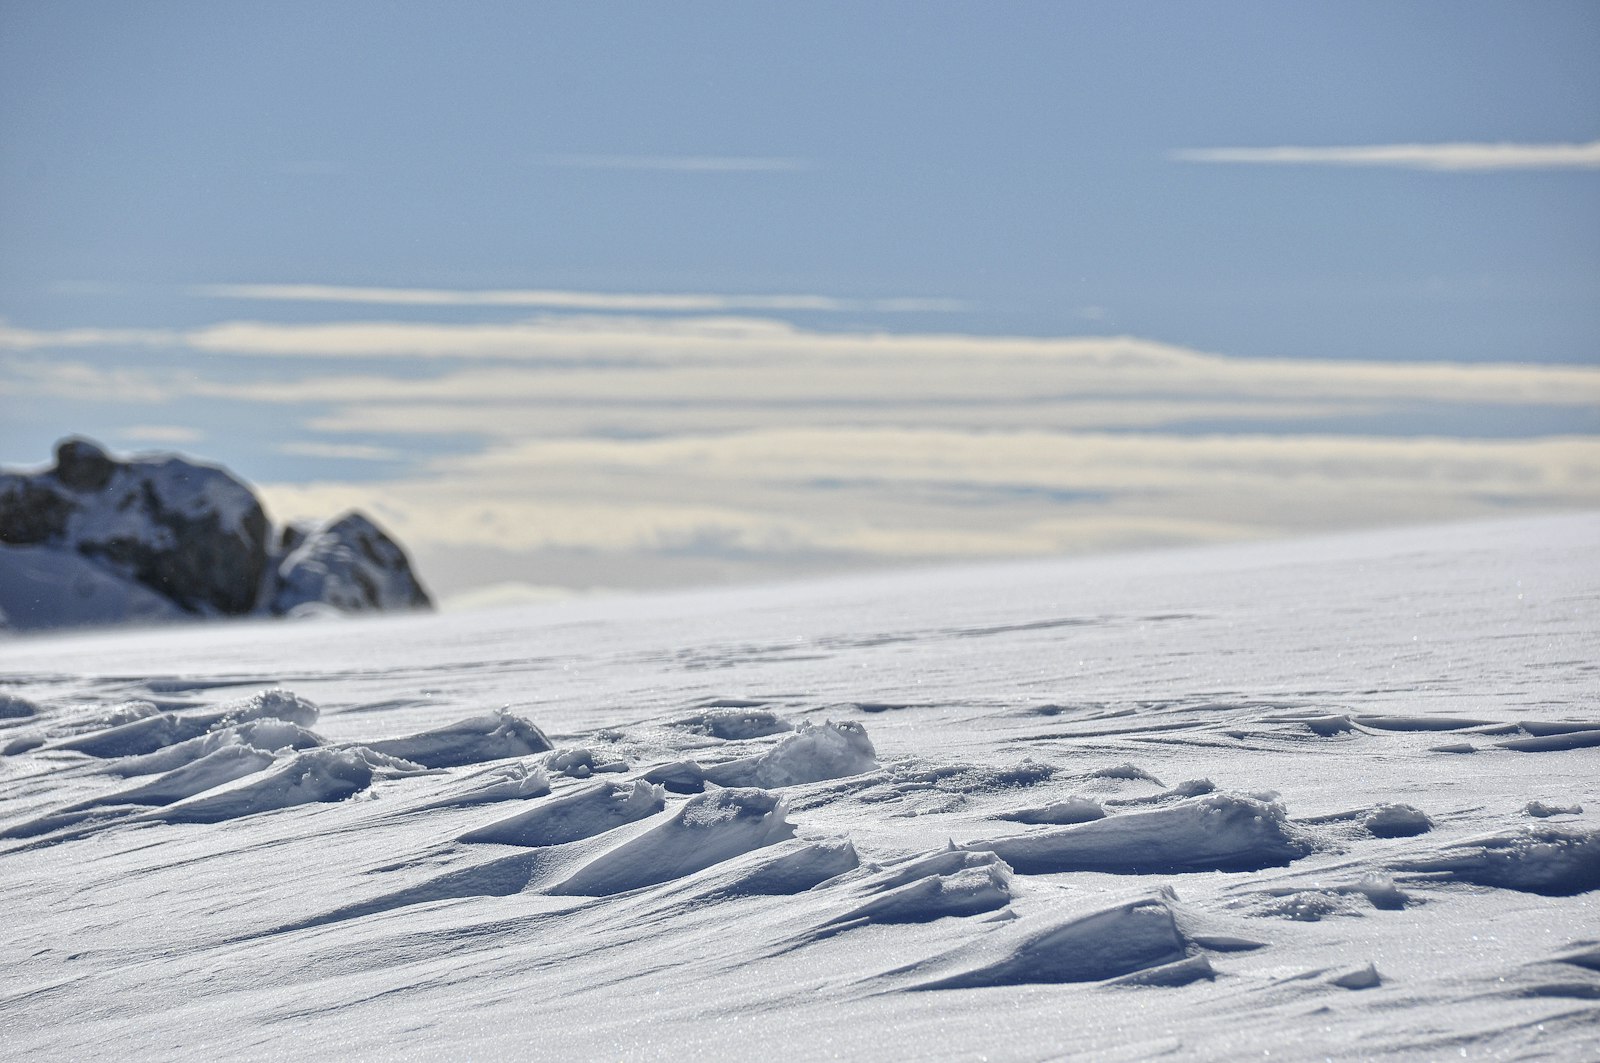 Nikon AF-S DX Nikkor 18-300mm F3.5-5.6G ED VR sample photo. Landscape photo of snows photography